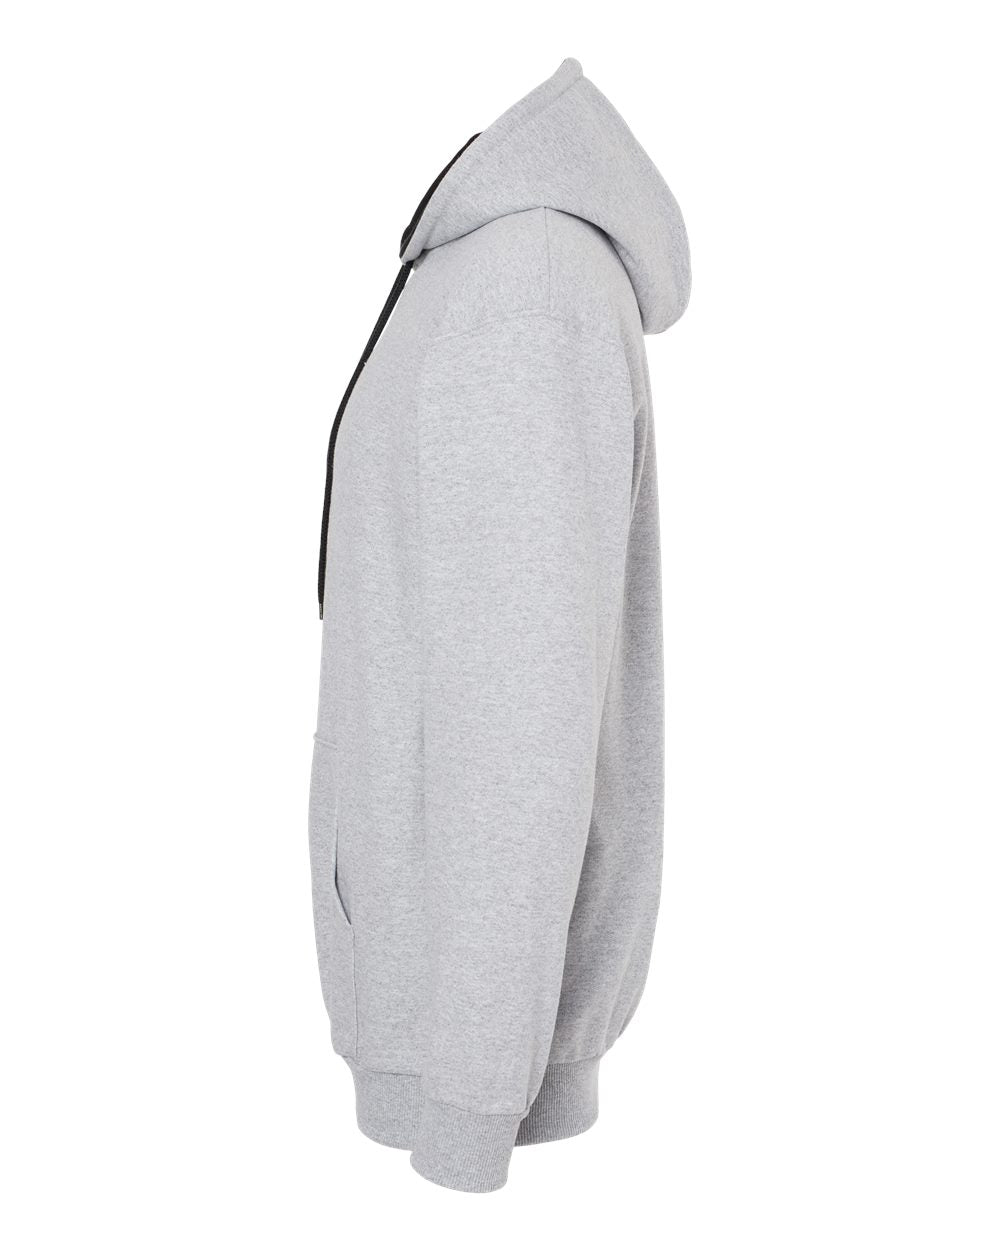 King Fashion Two-Tone Hooded Sweatshirt KF9041 #color_Sport Grey/ Black